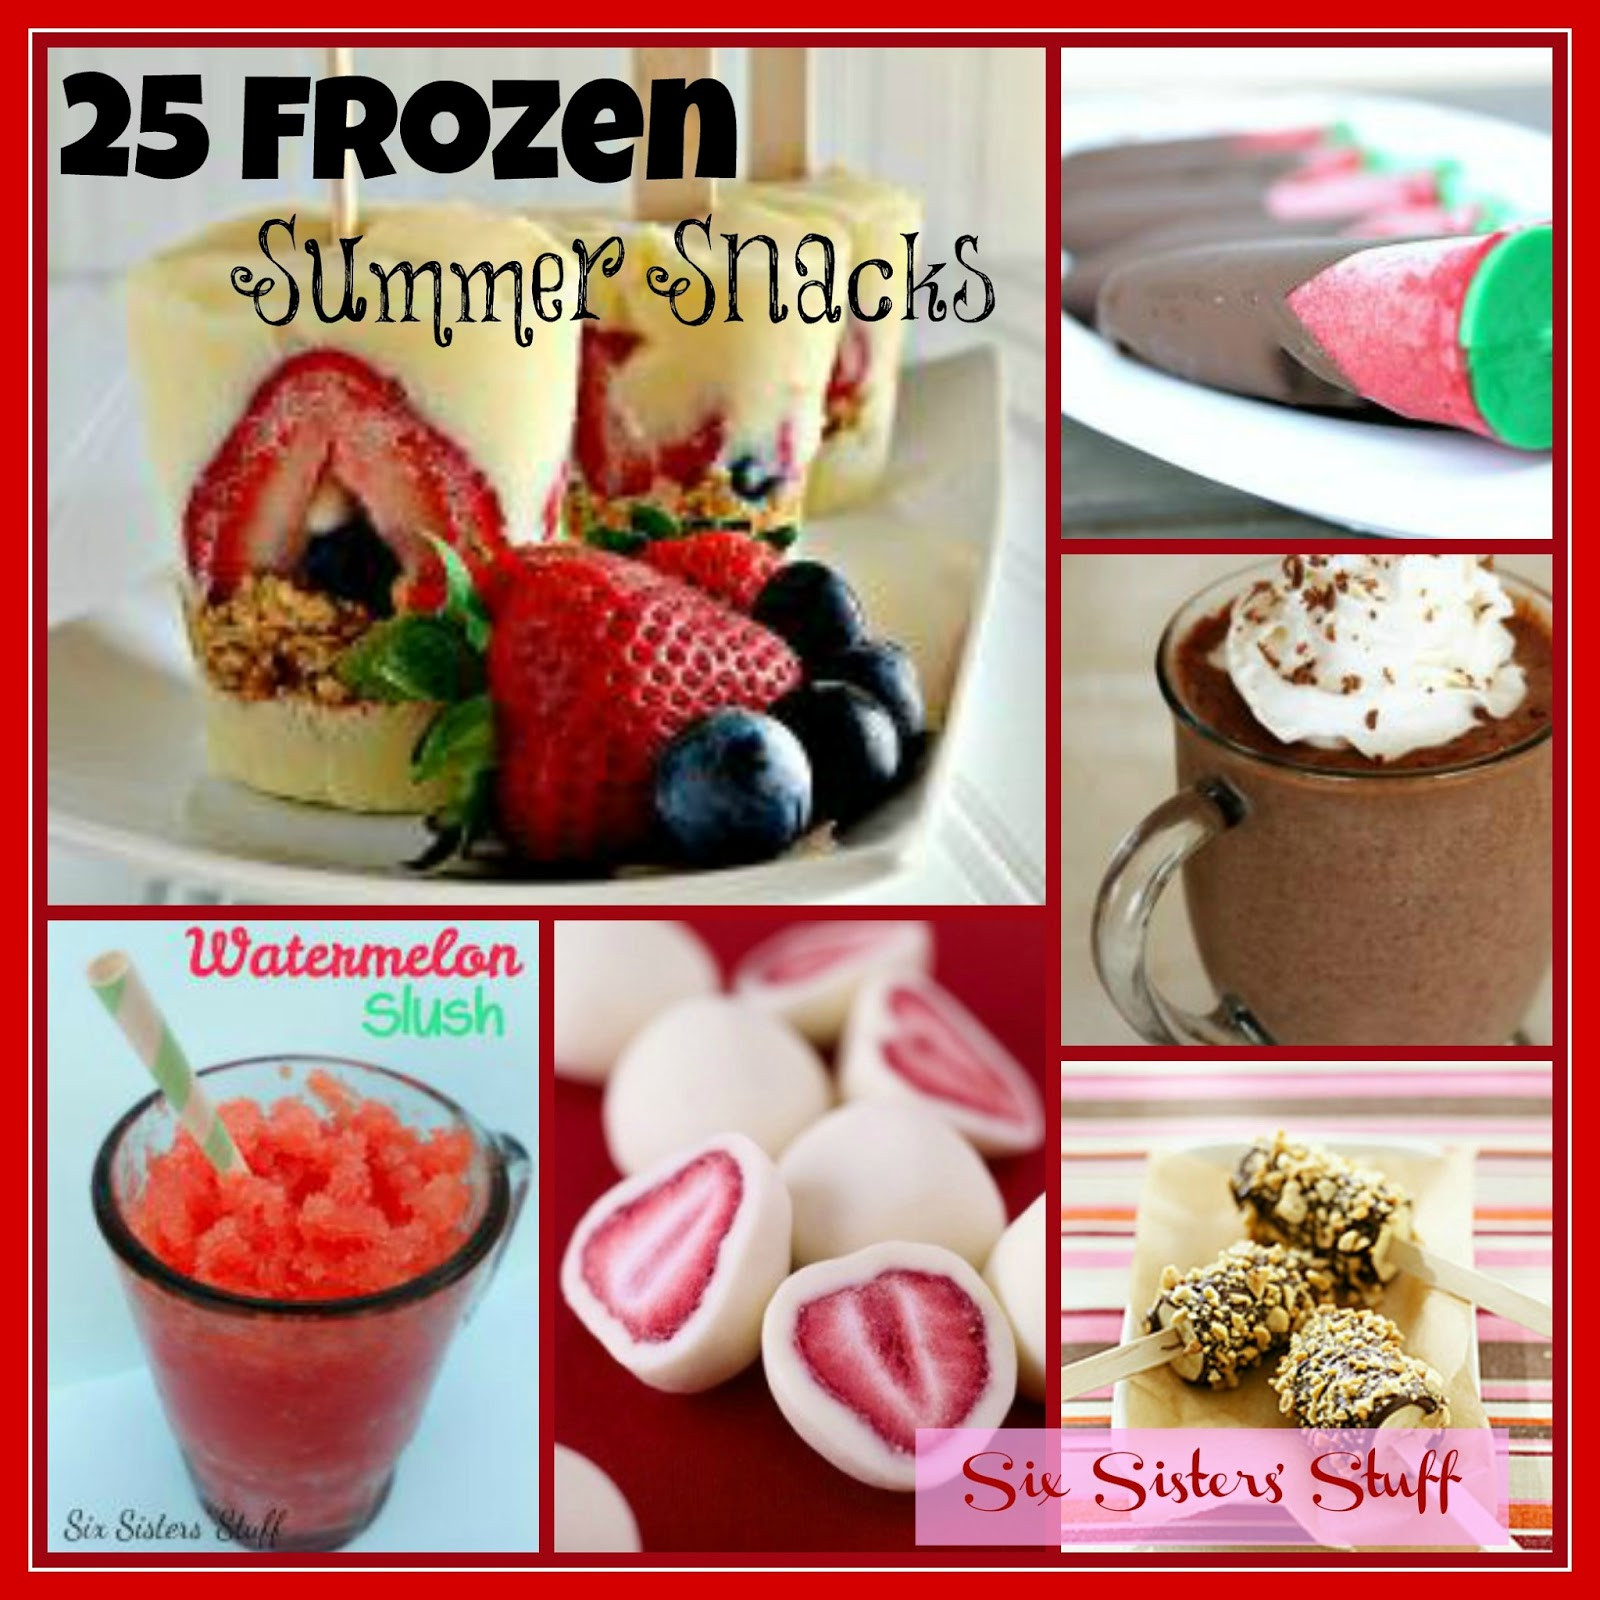 Summer Snacks Recipes
 25 Frozen Summer Snacks